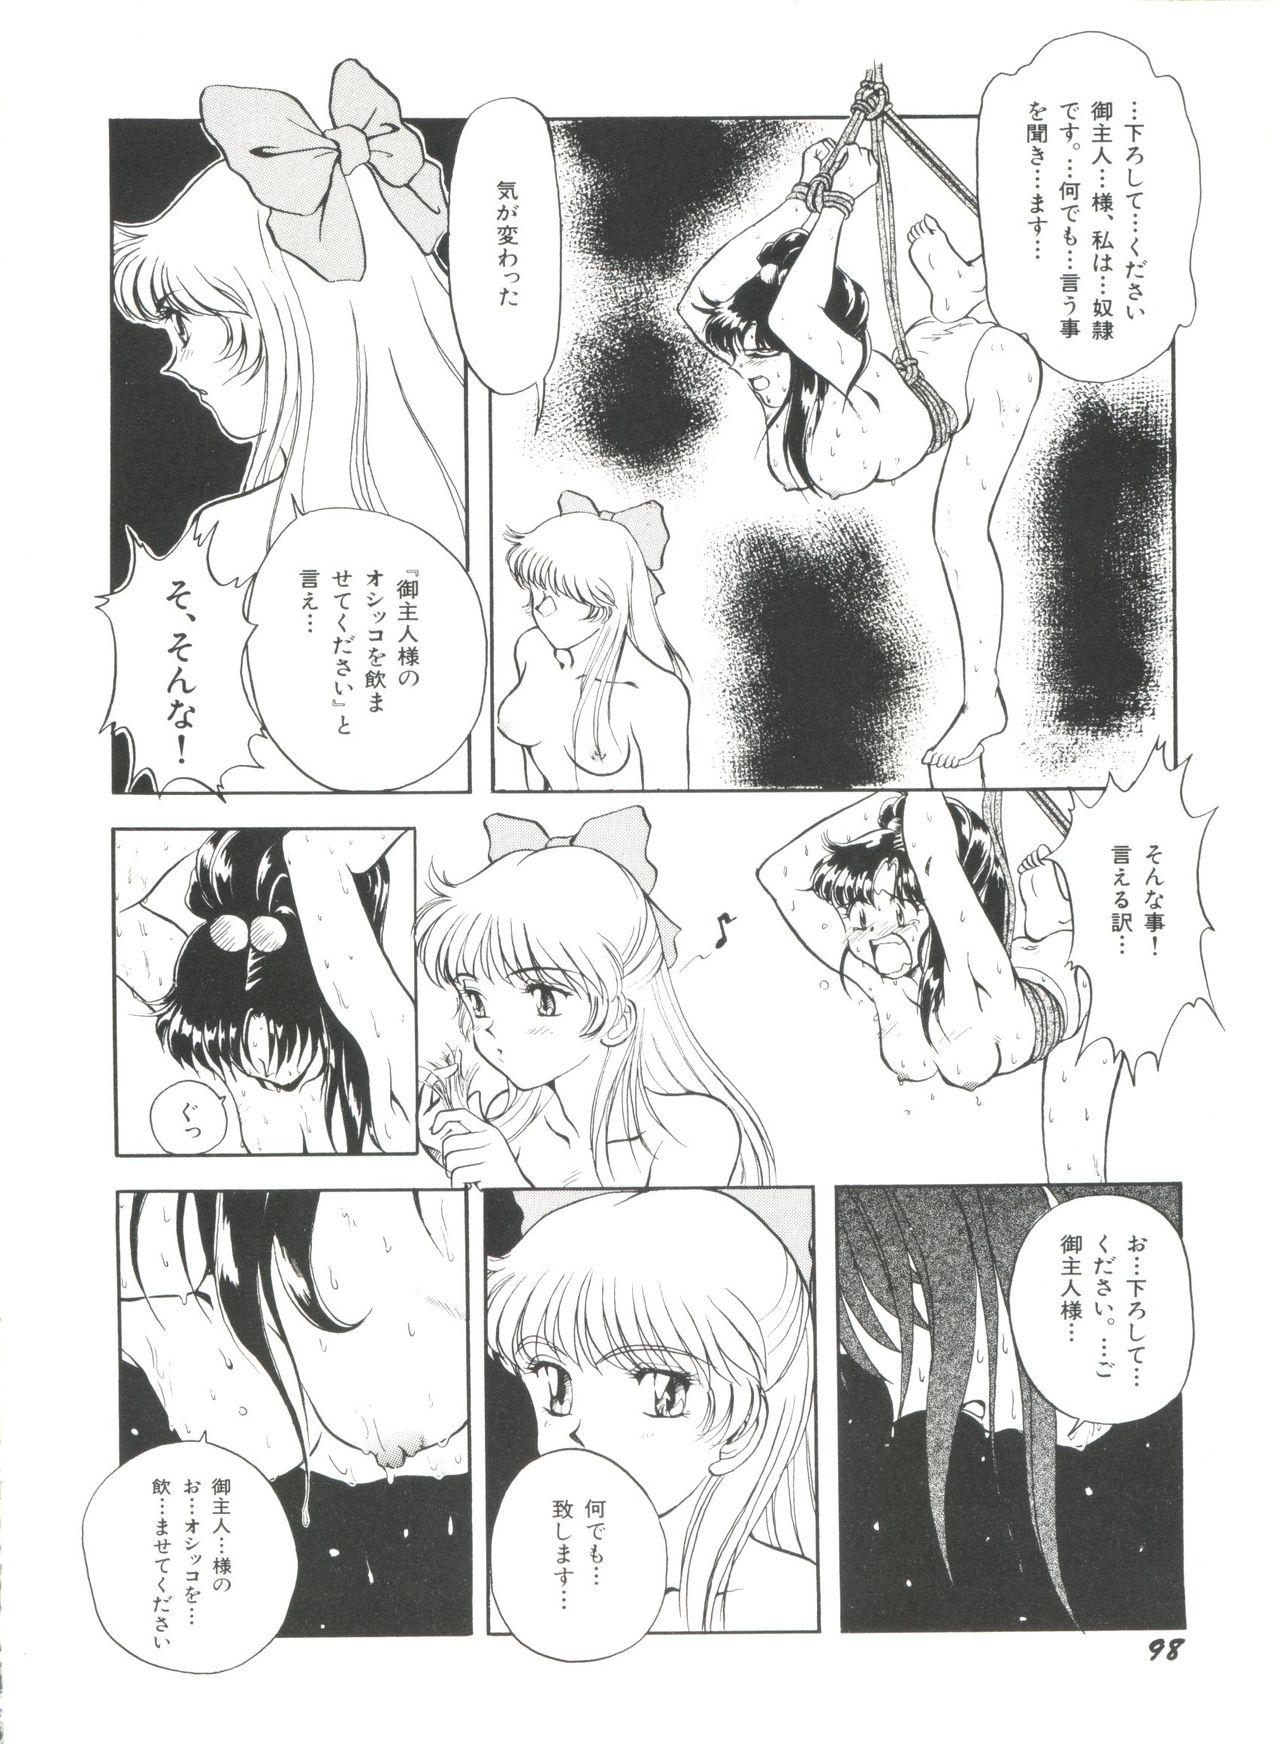 Bishoujo Doujinshi Anthology 18 - Moon Paradise 11 Tsuki no Rakuen 99